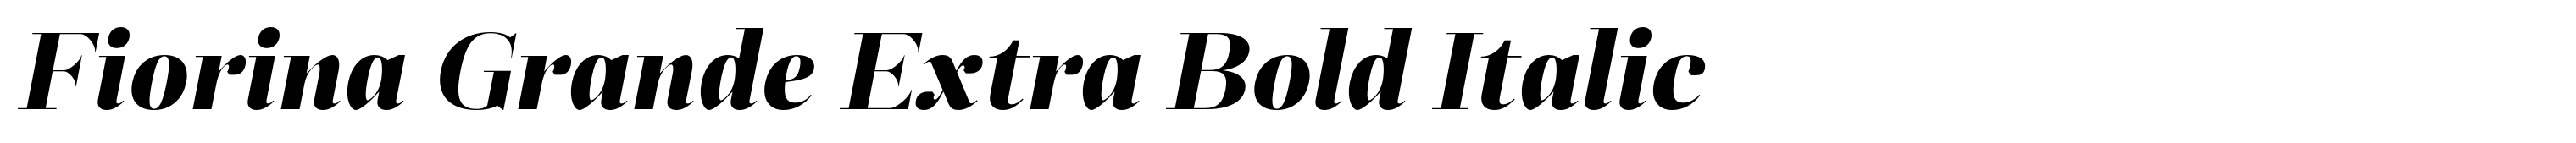 Fiorina Grande Extra Bold Italic